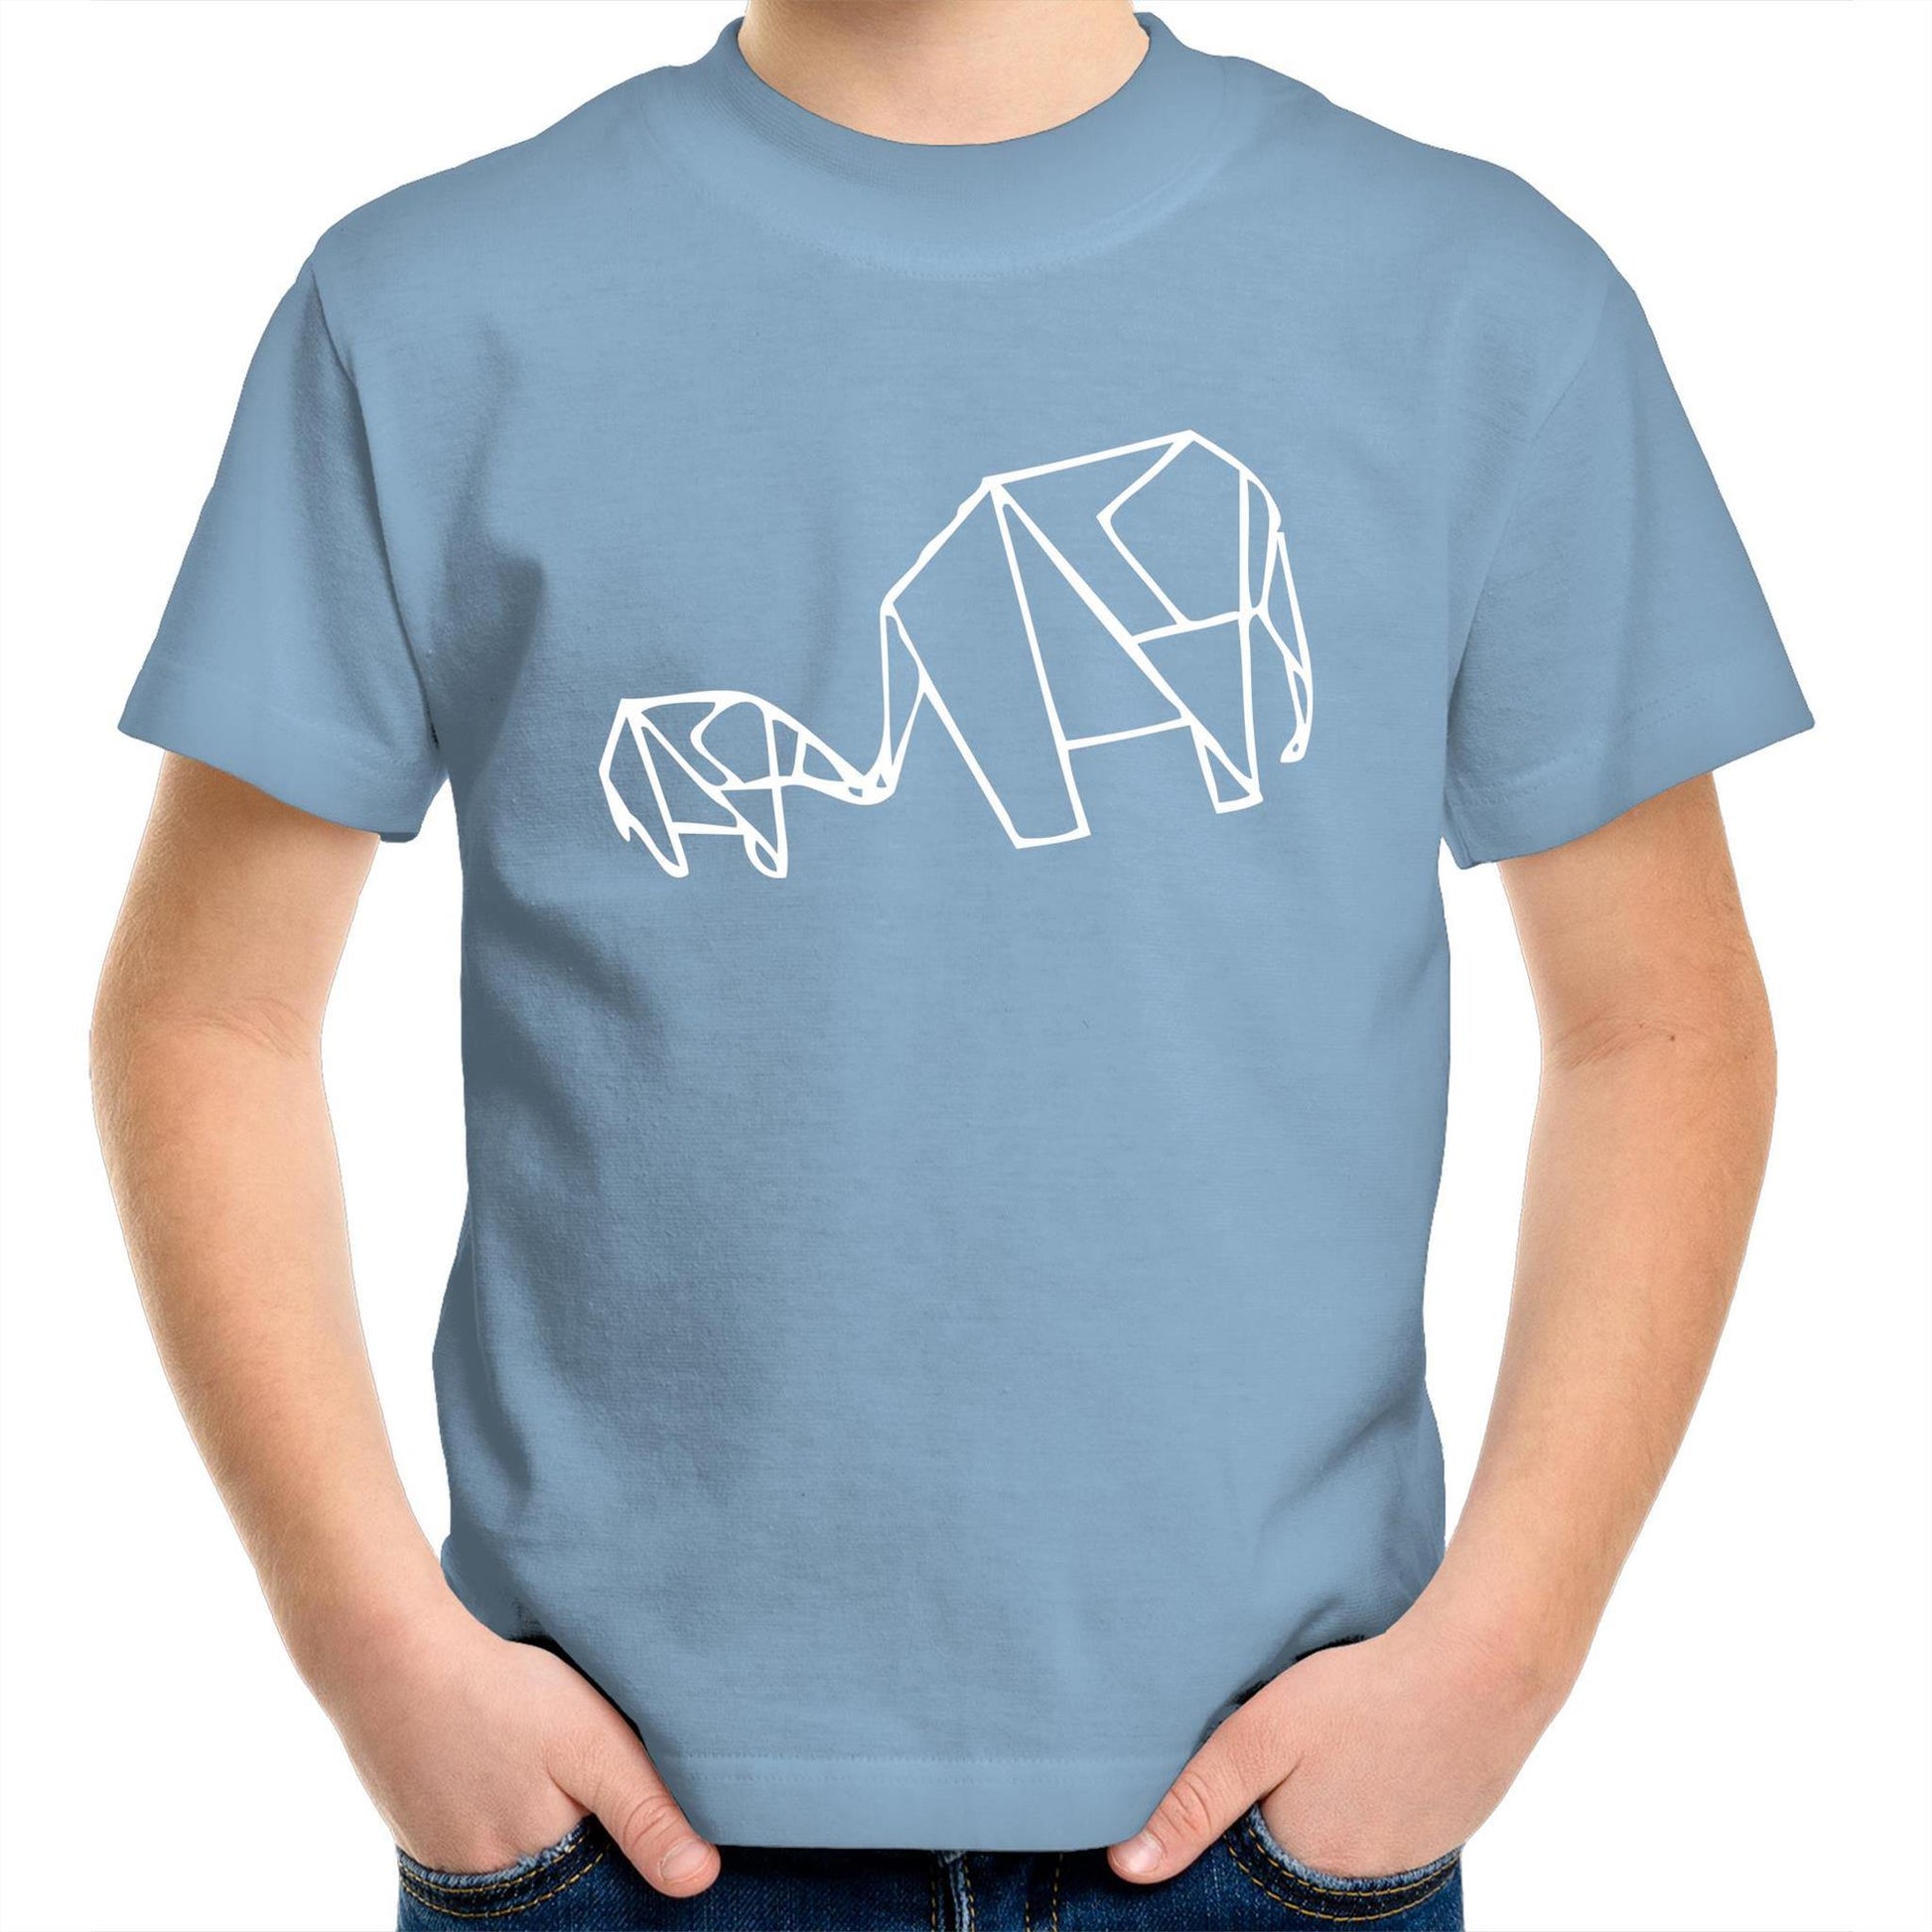 Origami Elephant - Kids Youth Crew T-Shirt Carolina Blue Kids Youth T-shirt animal